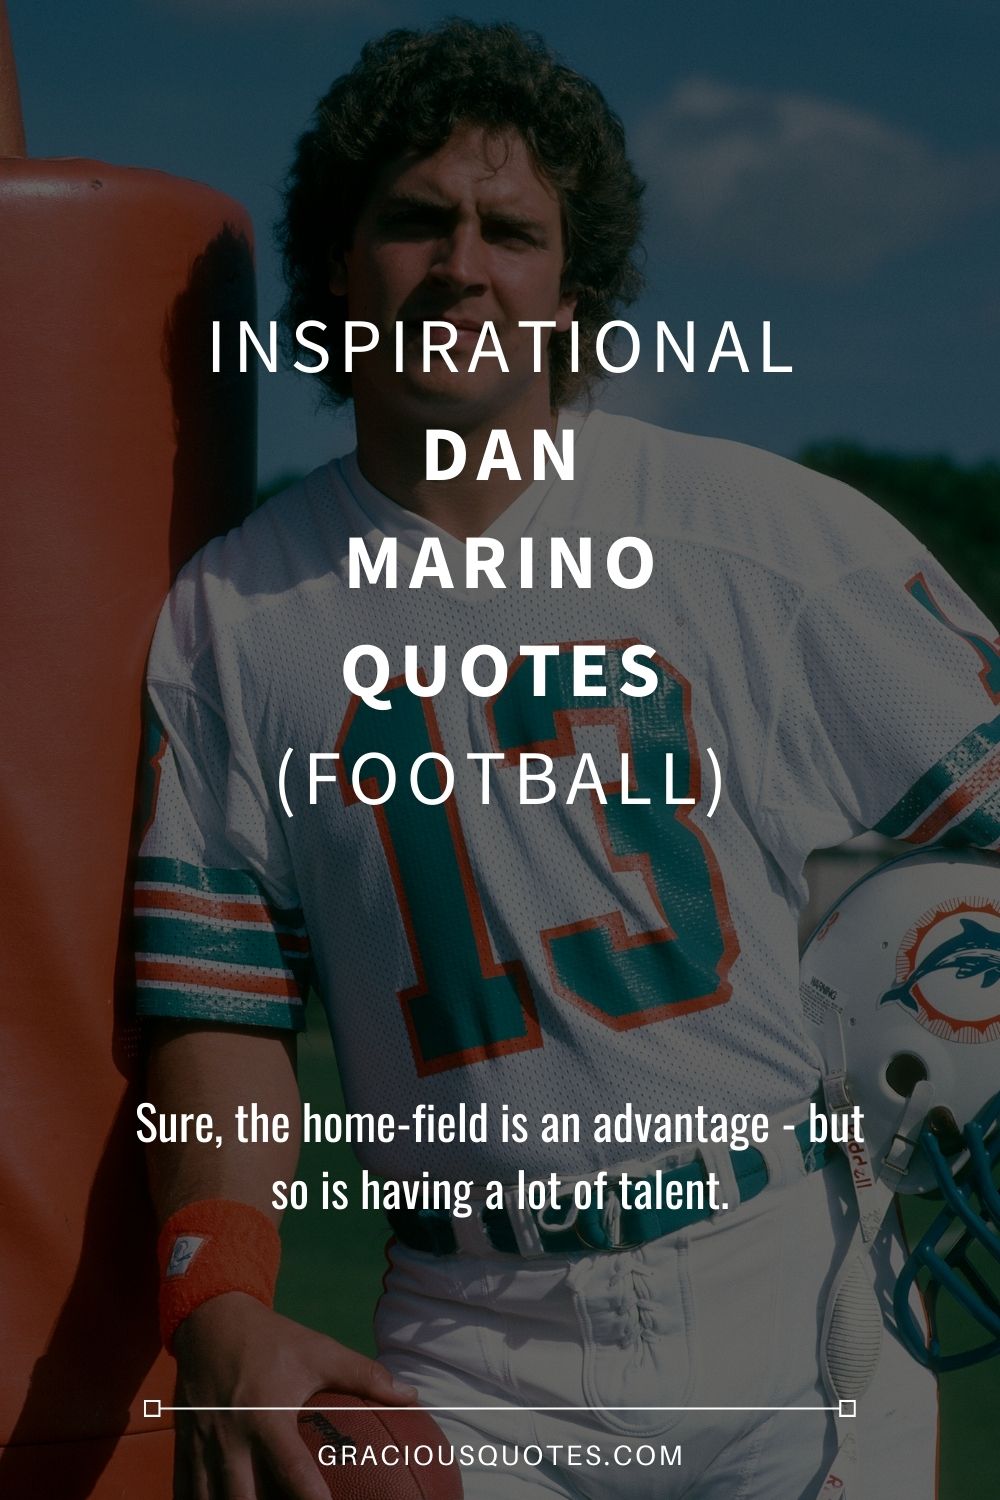 Inspirational Dan Marino Quotes (FOOTBALL) - Gracious Quotes